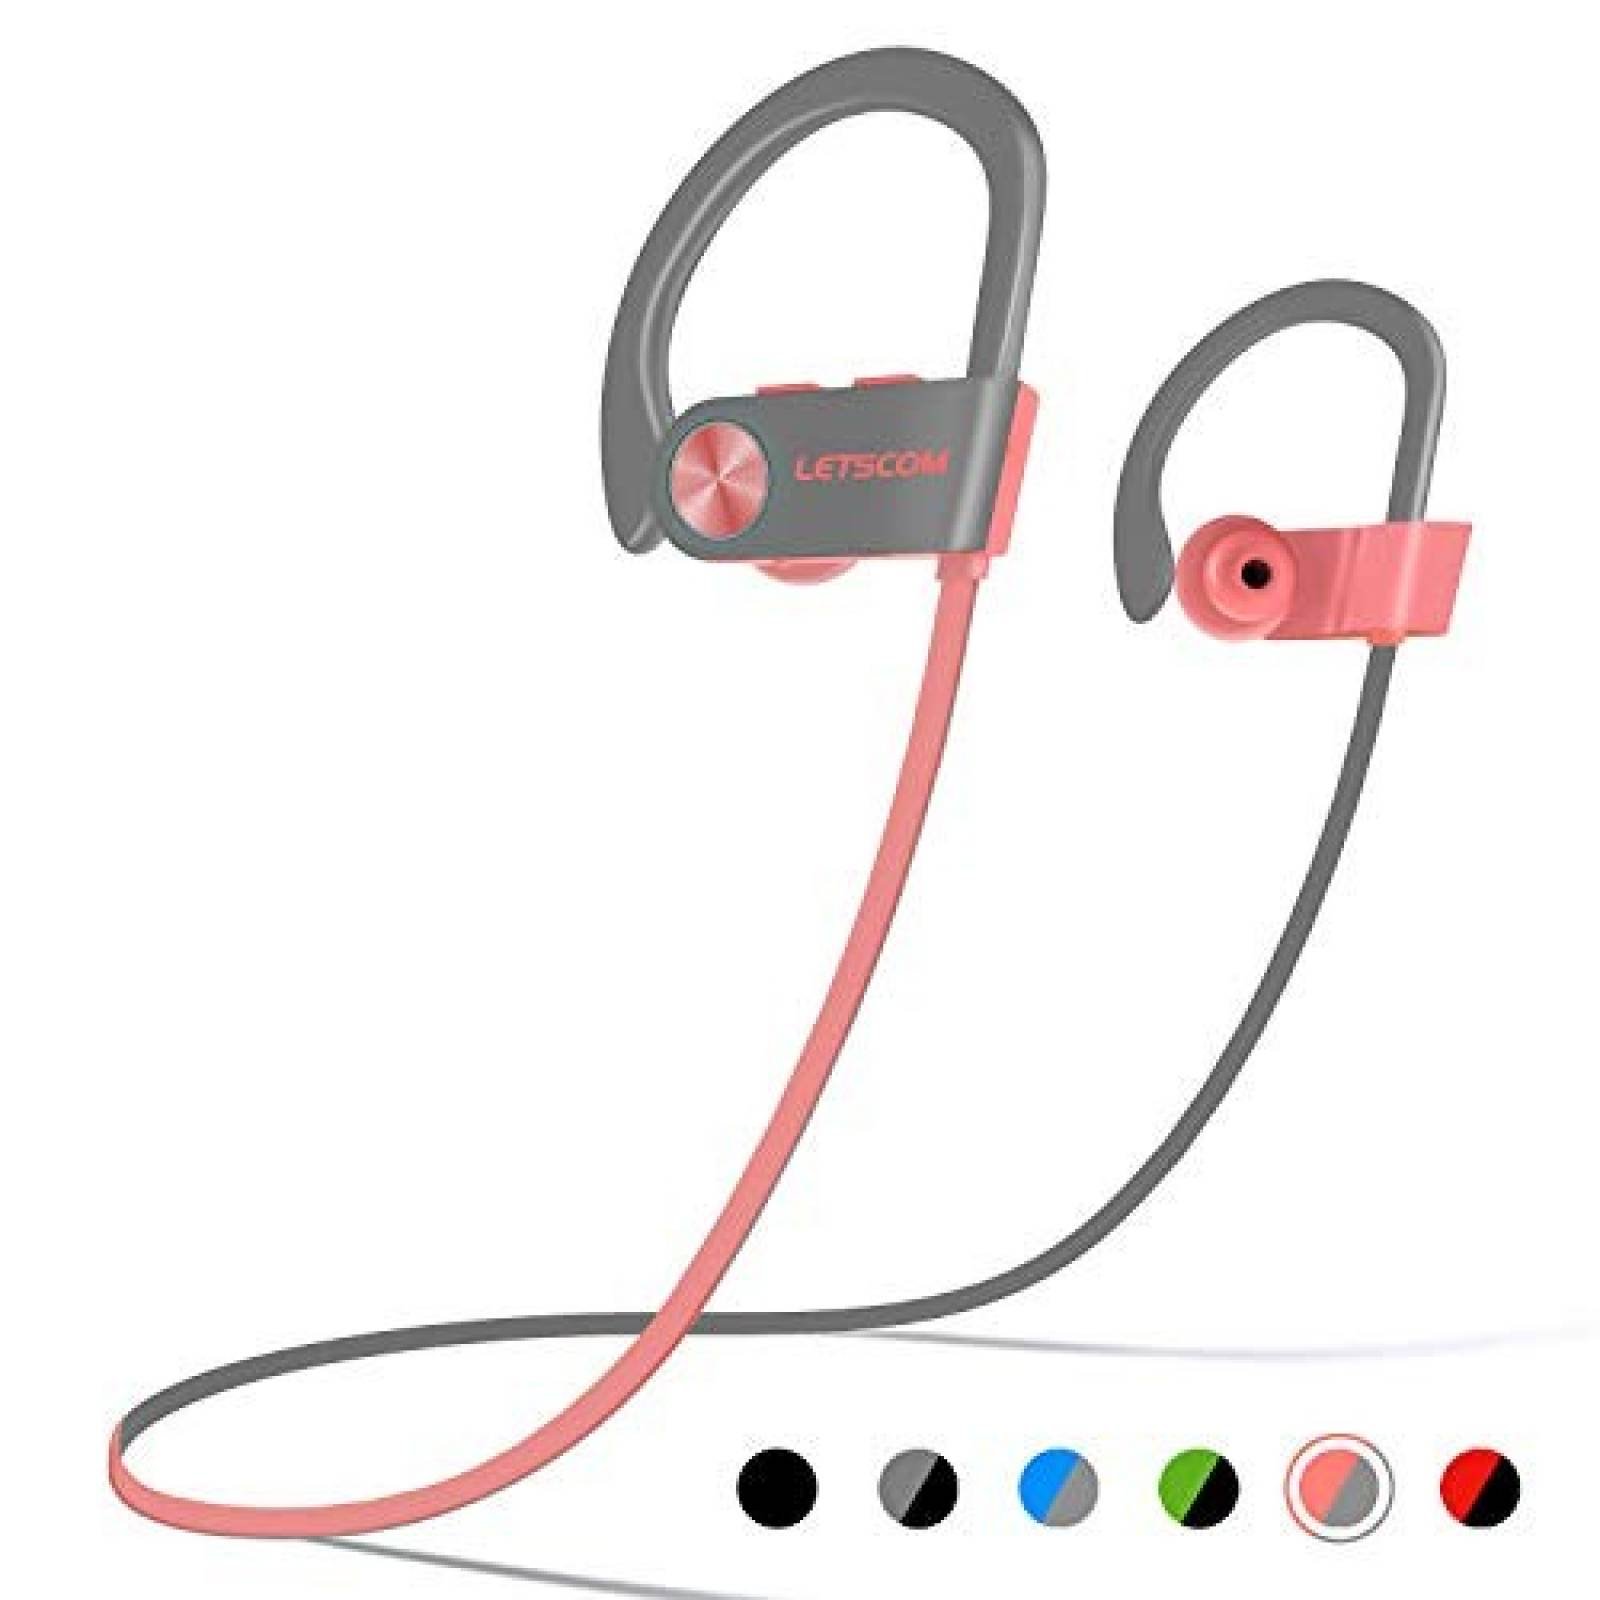 Audífonos LETSCOM Bluetooth Impermeables 8hrs Batería -Rosa